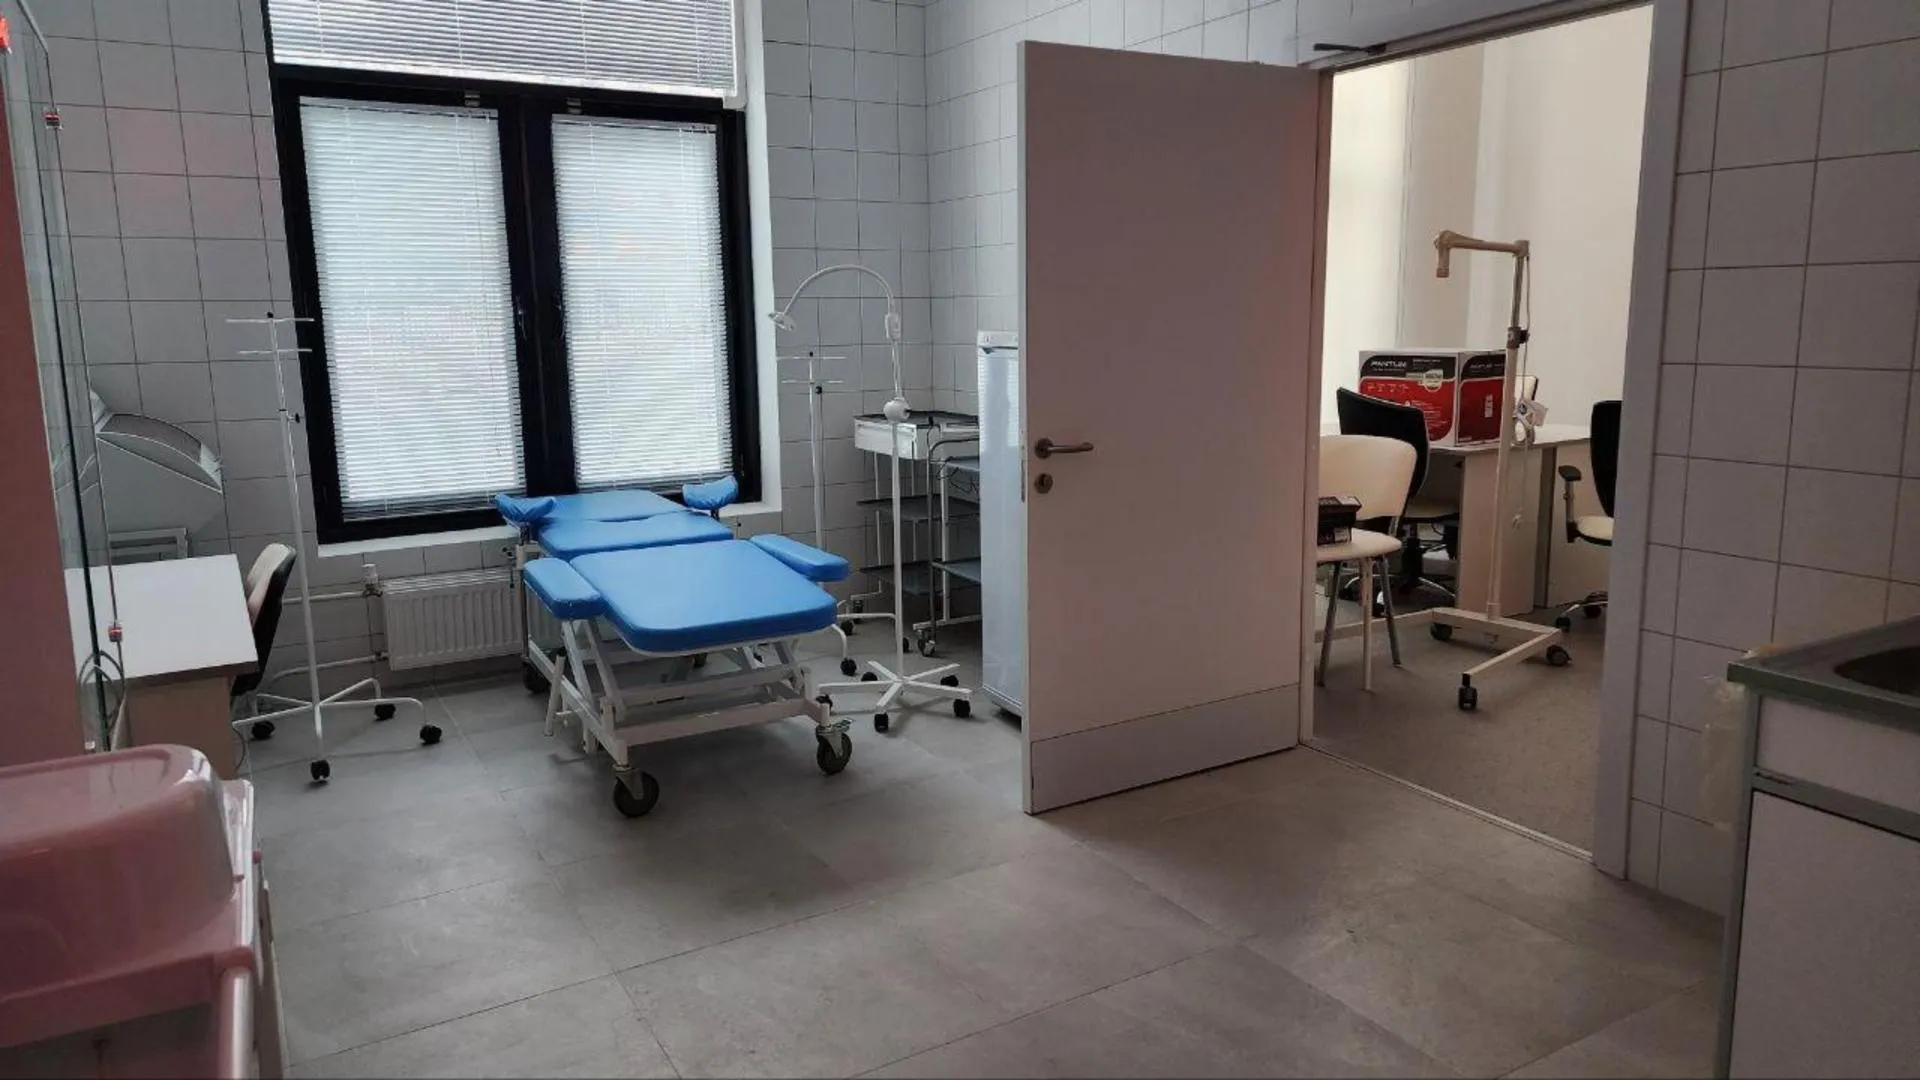 Новая поликлиника в микрорайоне «Жулебино Парк» готовится открыть свои двери для пациентов